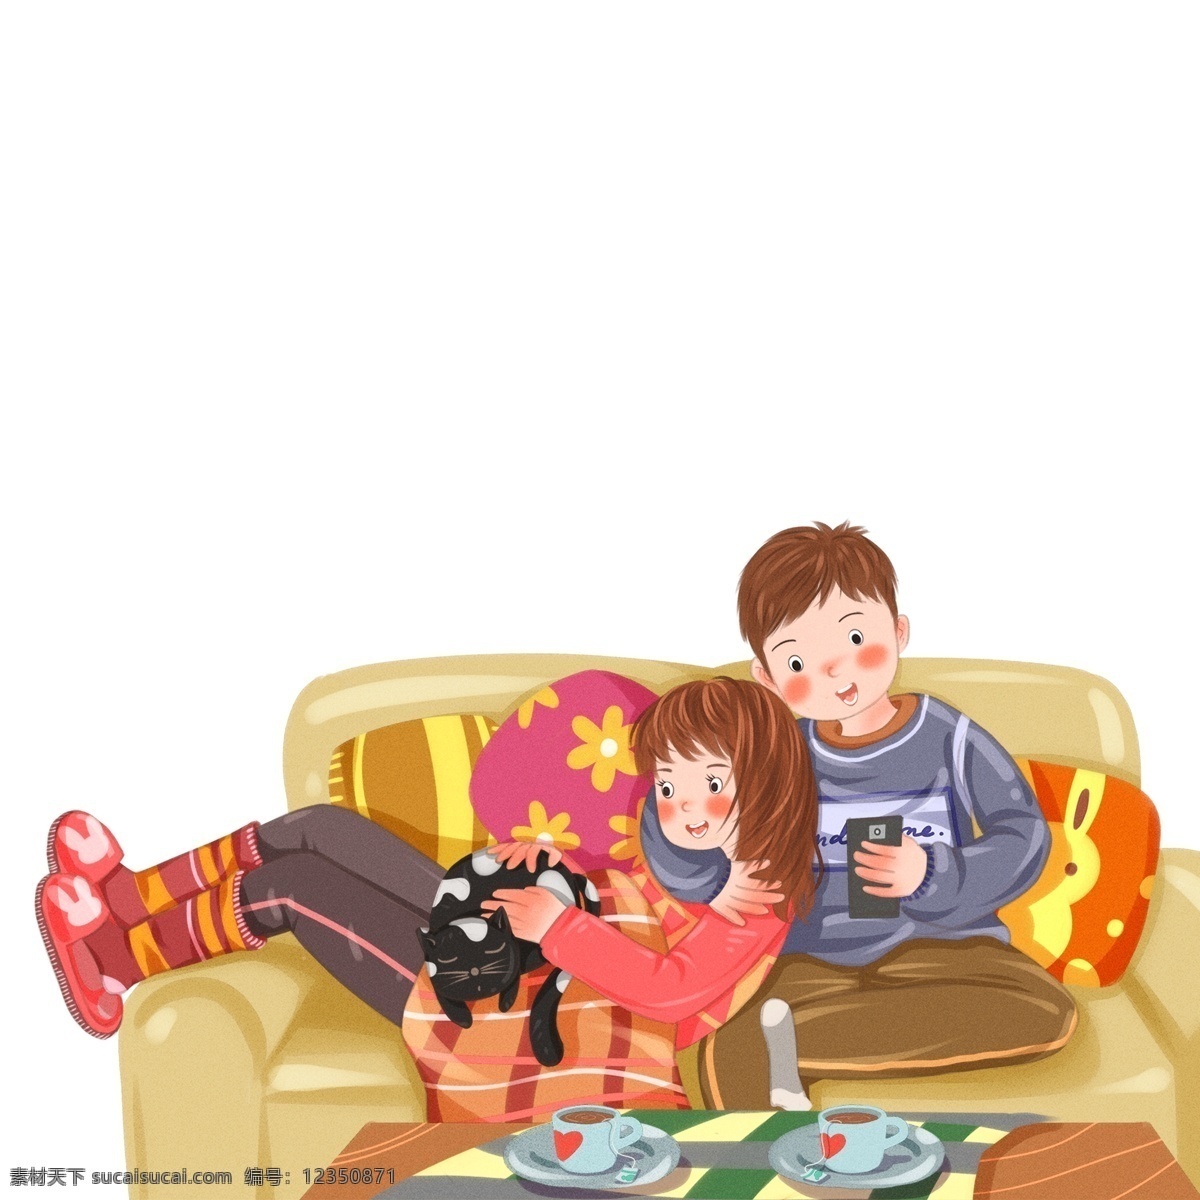 手绘 沙发 上 亲密 互动 情侣 卡通 彩绘 插画 宅家 人物 夫妻 同居